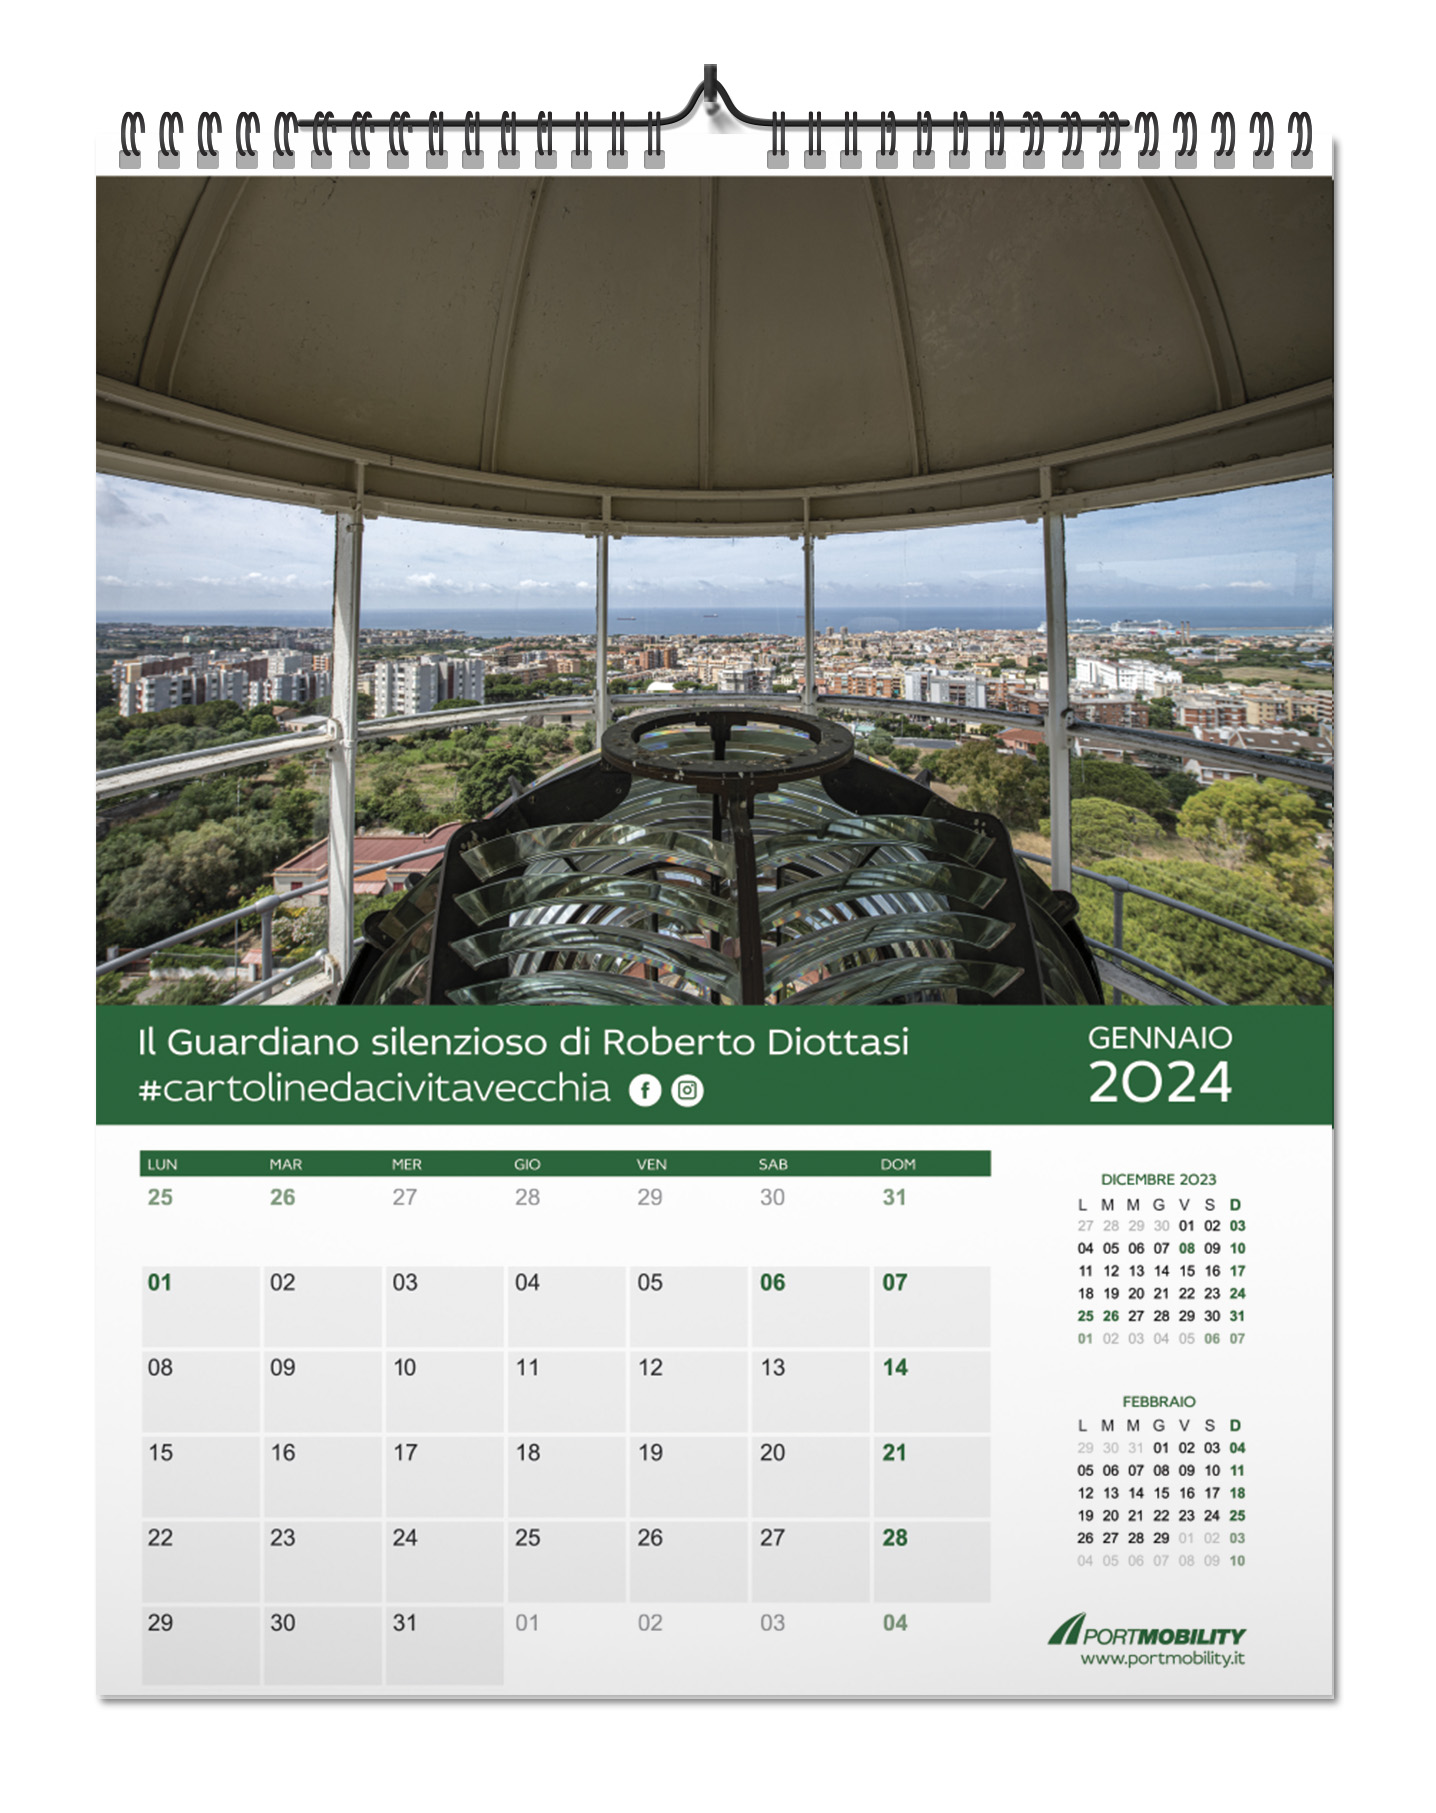 Cartoline da Civitavecchia 2024: il mese di gennaio in anteprima